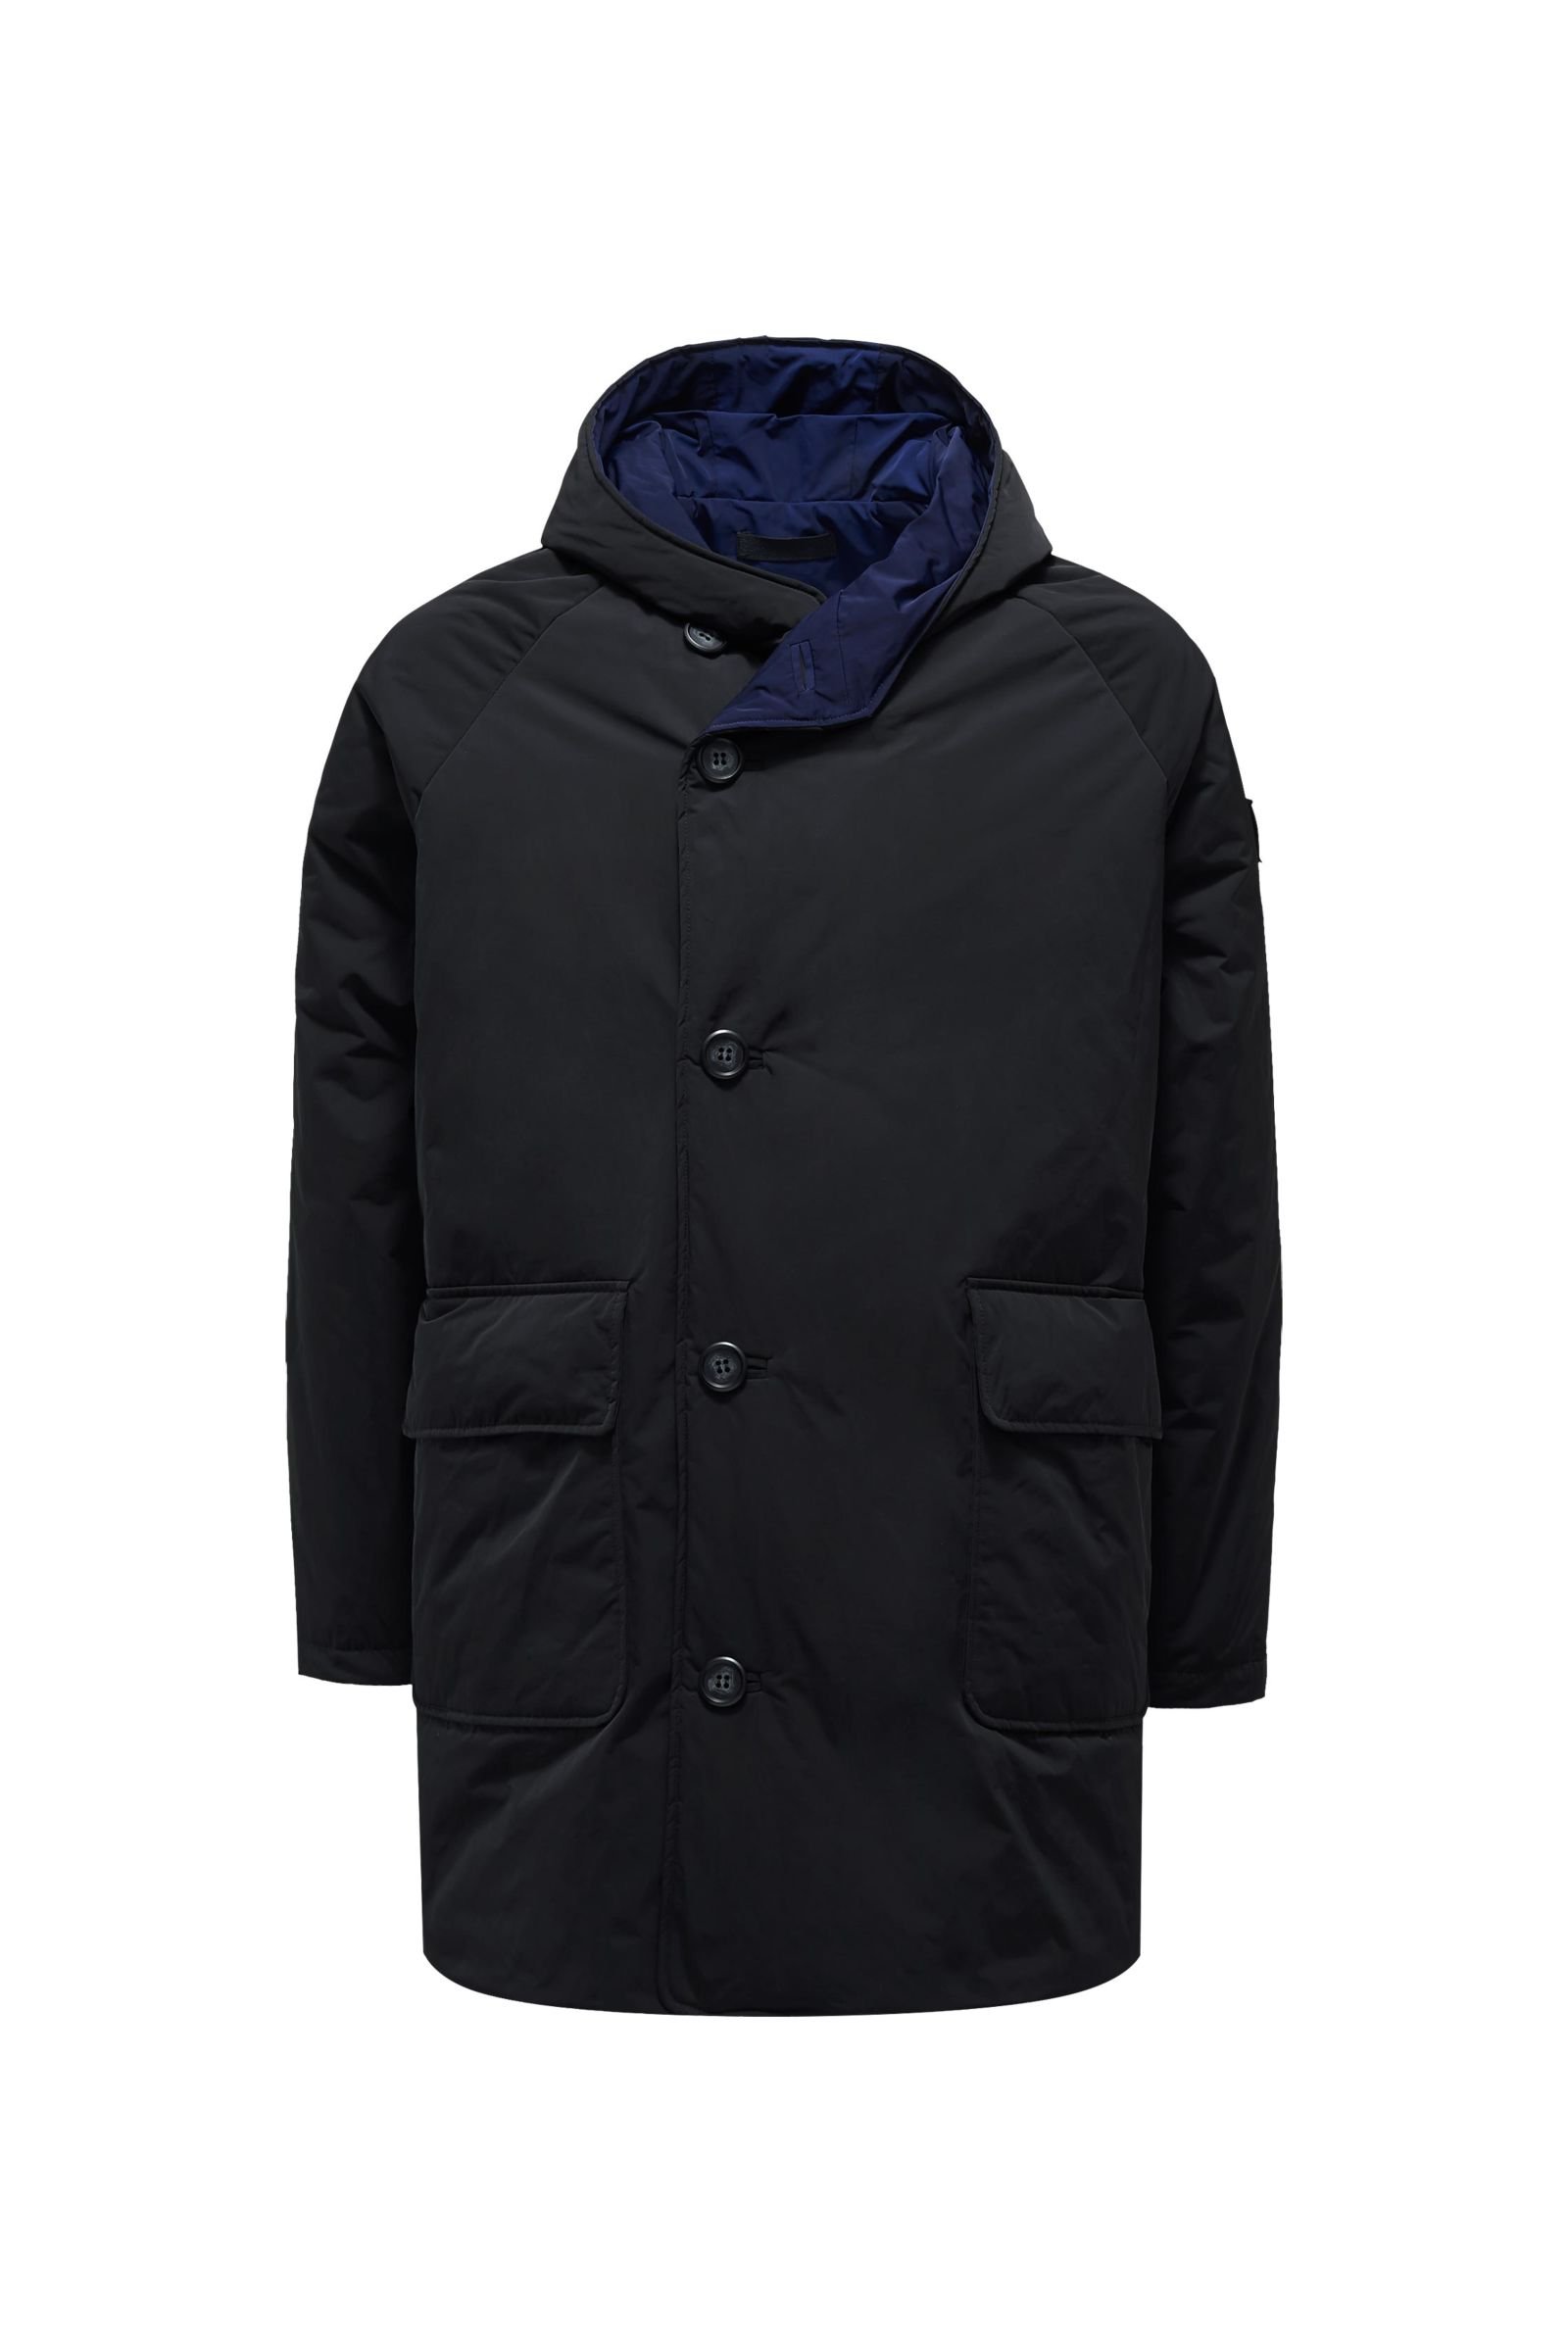 Reversible jacket black/dark blue